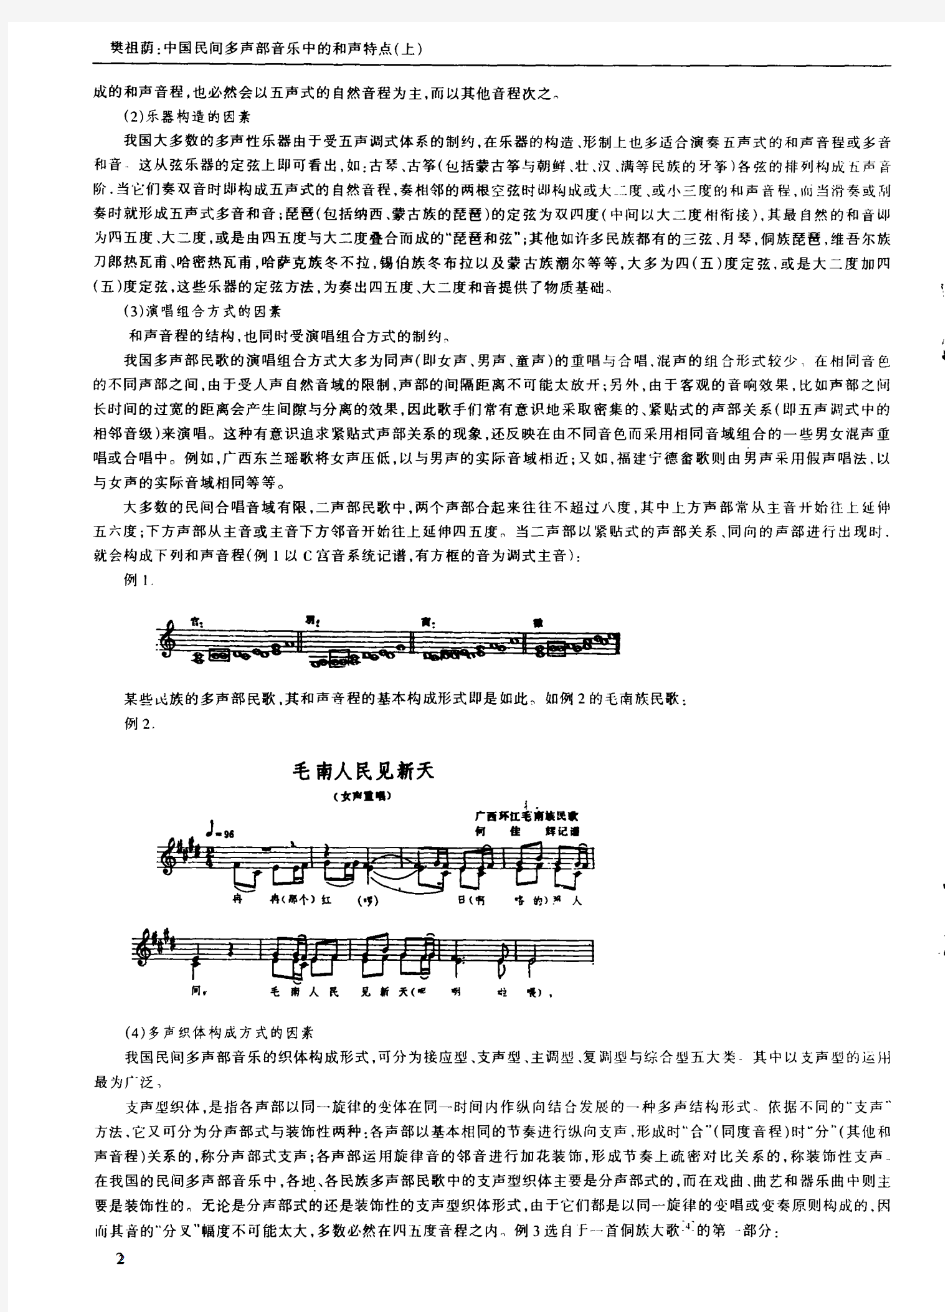 中国民间多声部音乐中的和声特点(上)